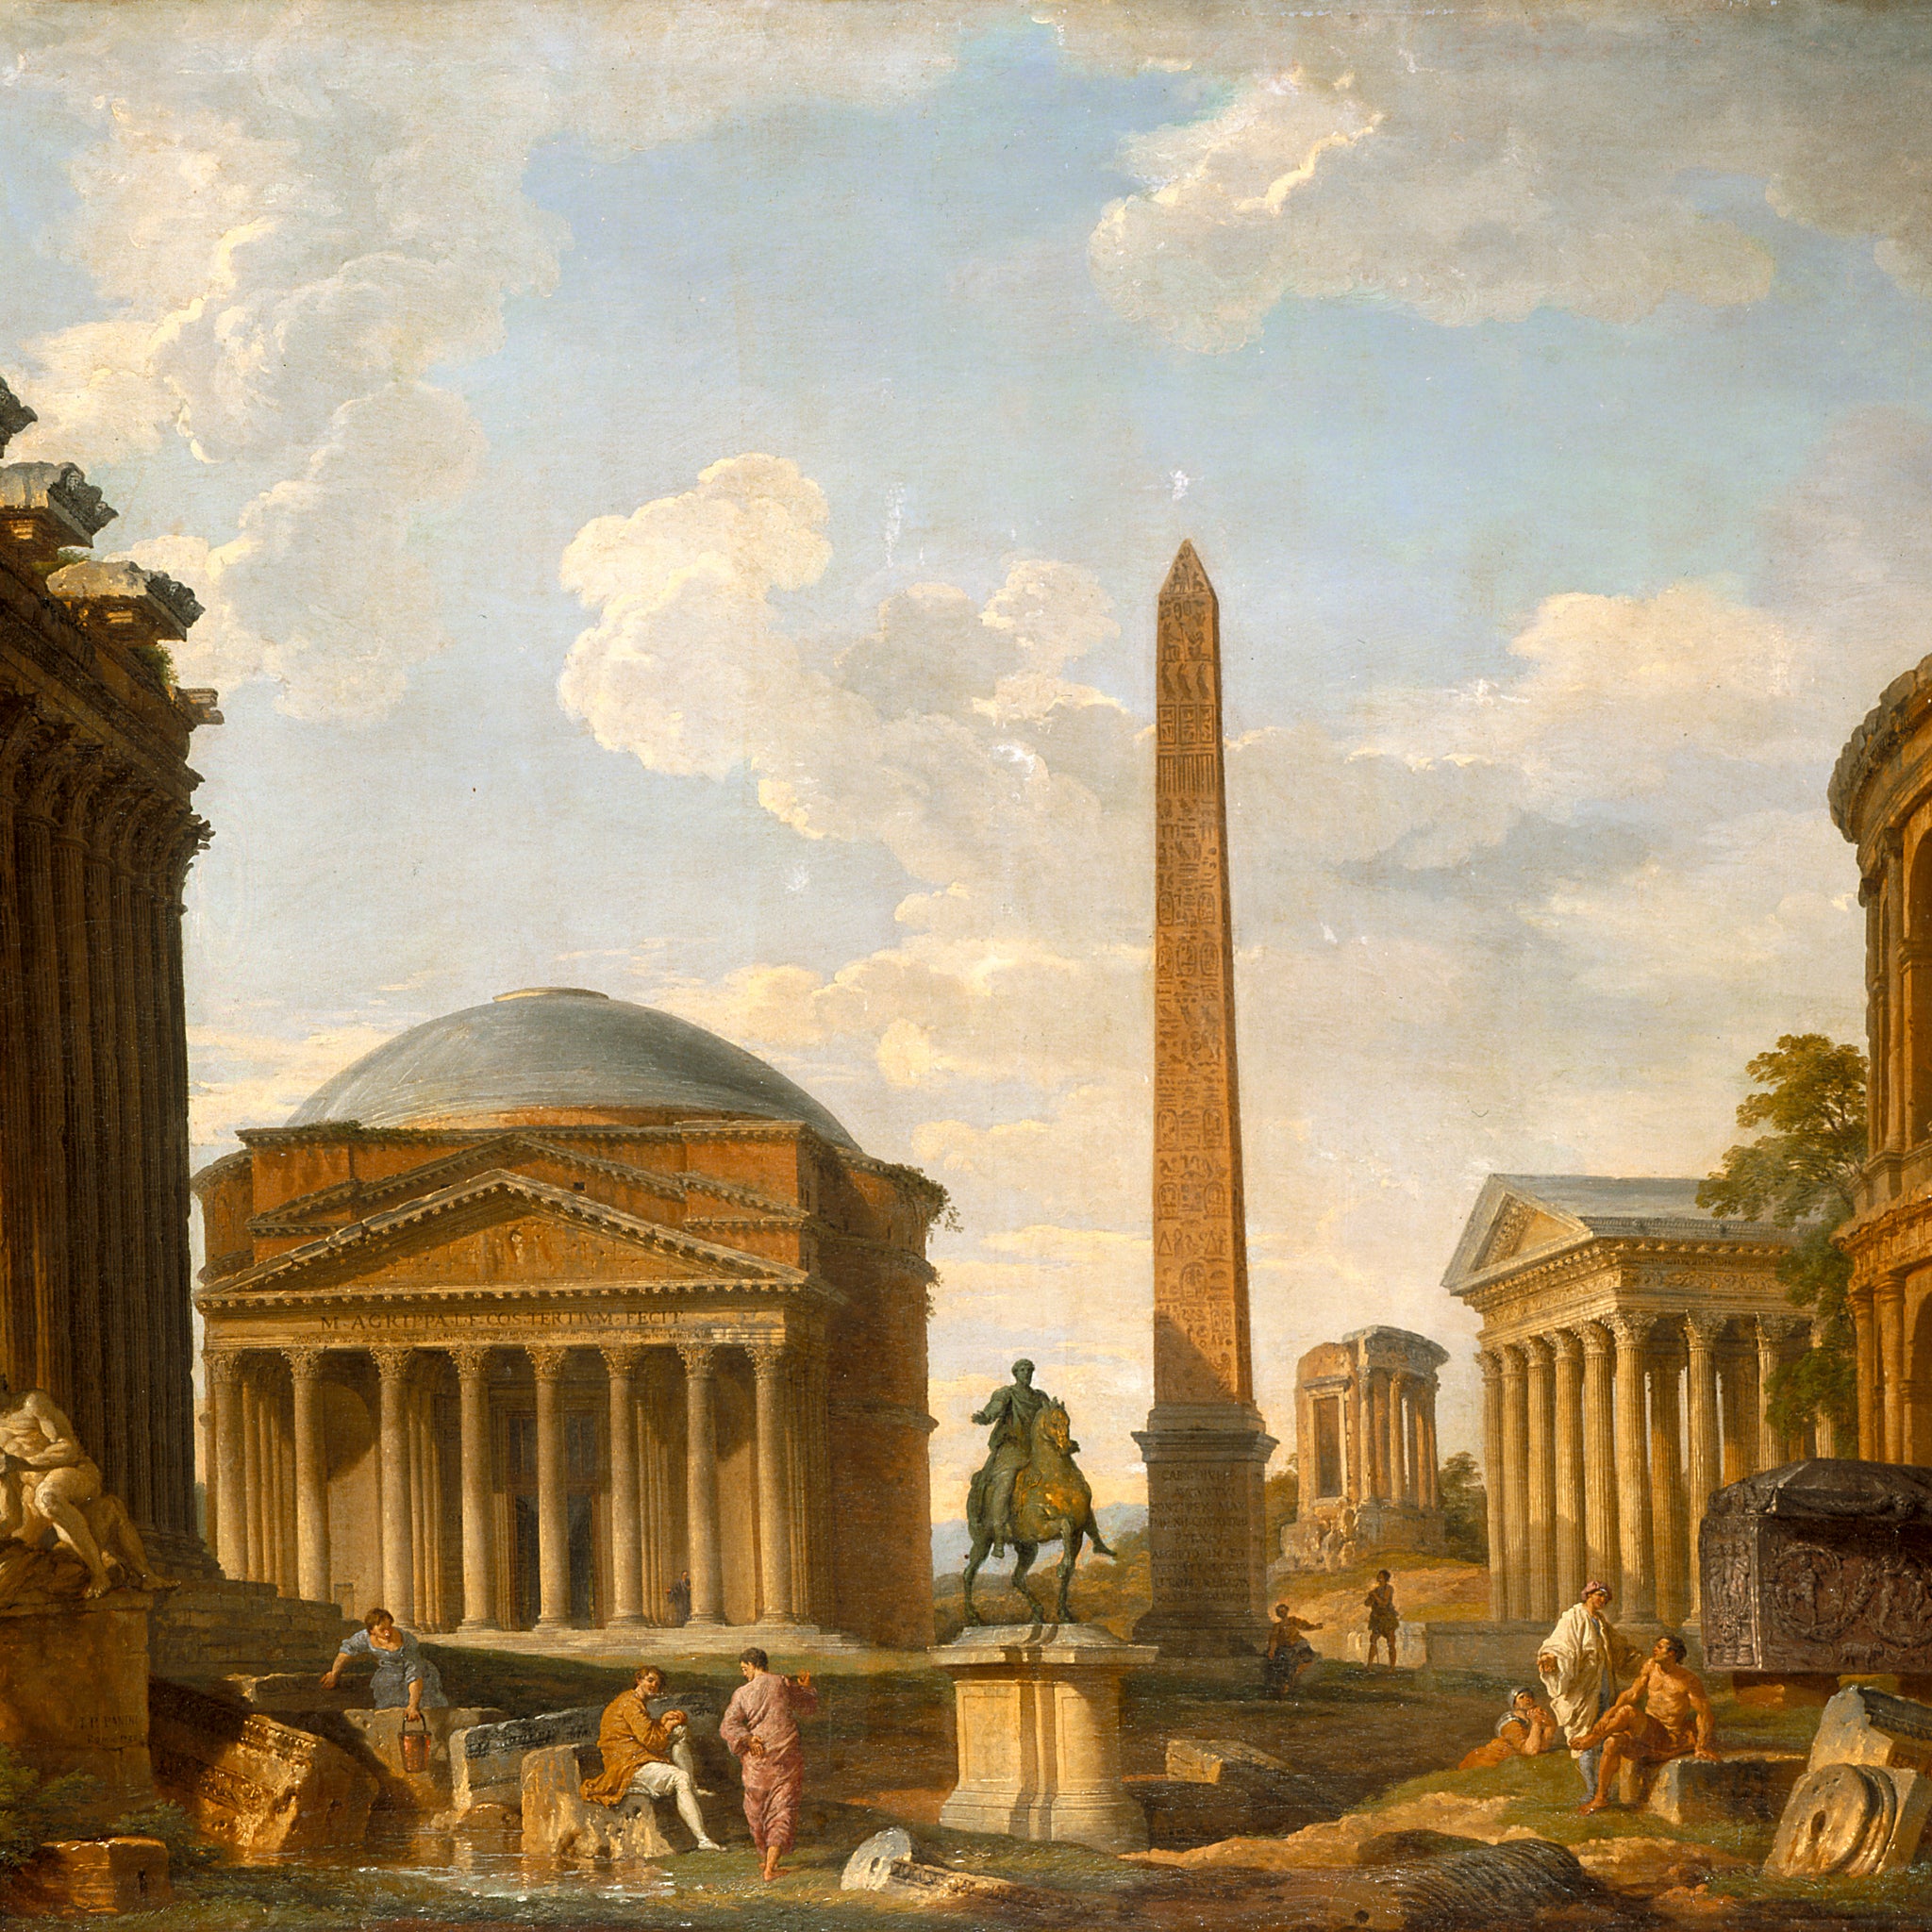 Capriccio romain Le Panthéon et autres monuments, 1735 - Giovanni Paolo Panini